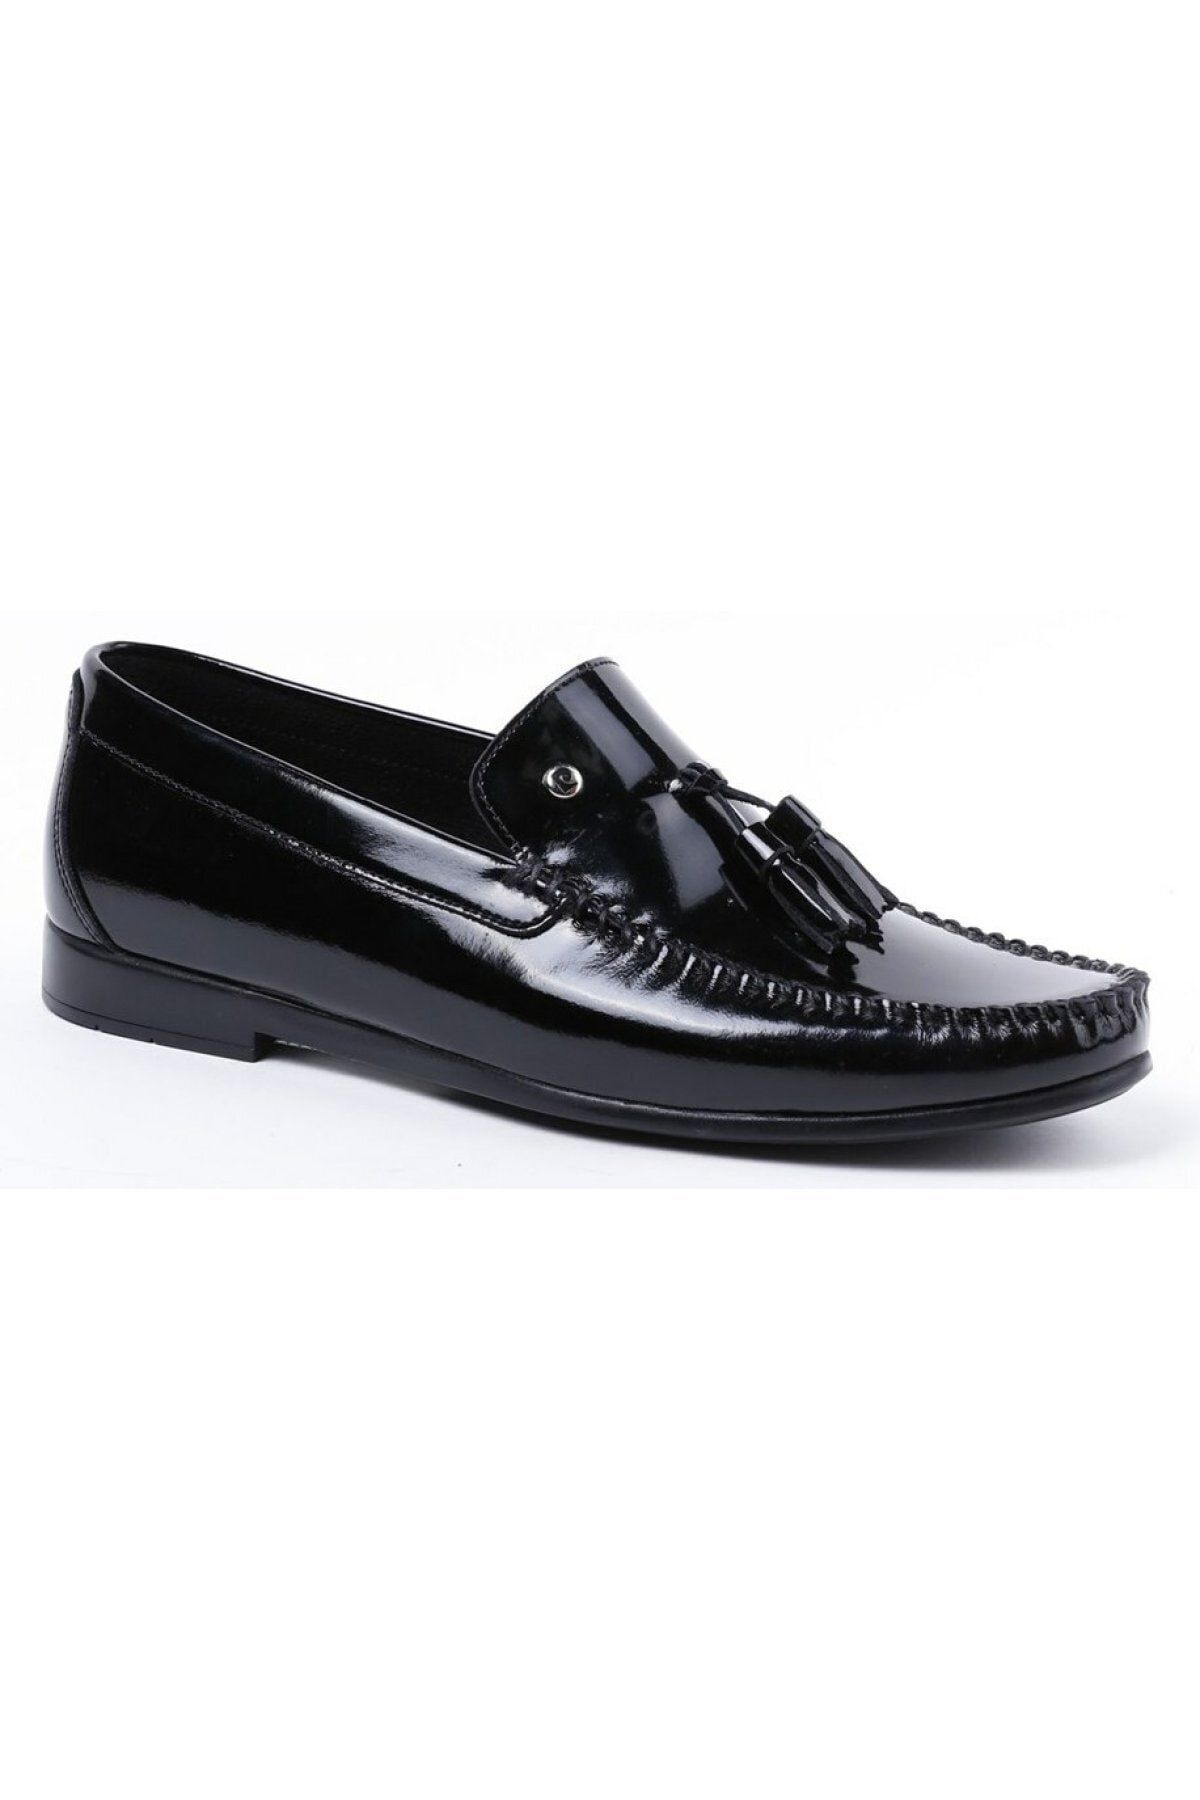 Pierre Cardin 2597 Siyah Rugan Erkek Loafer Günlük Deri Ayakkabı